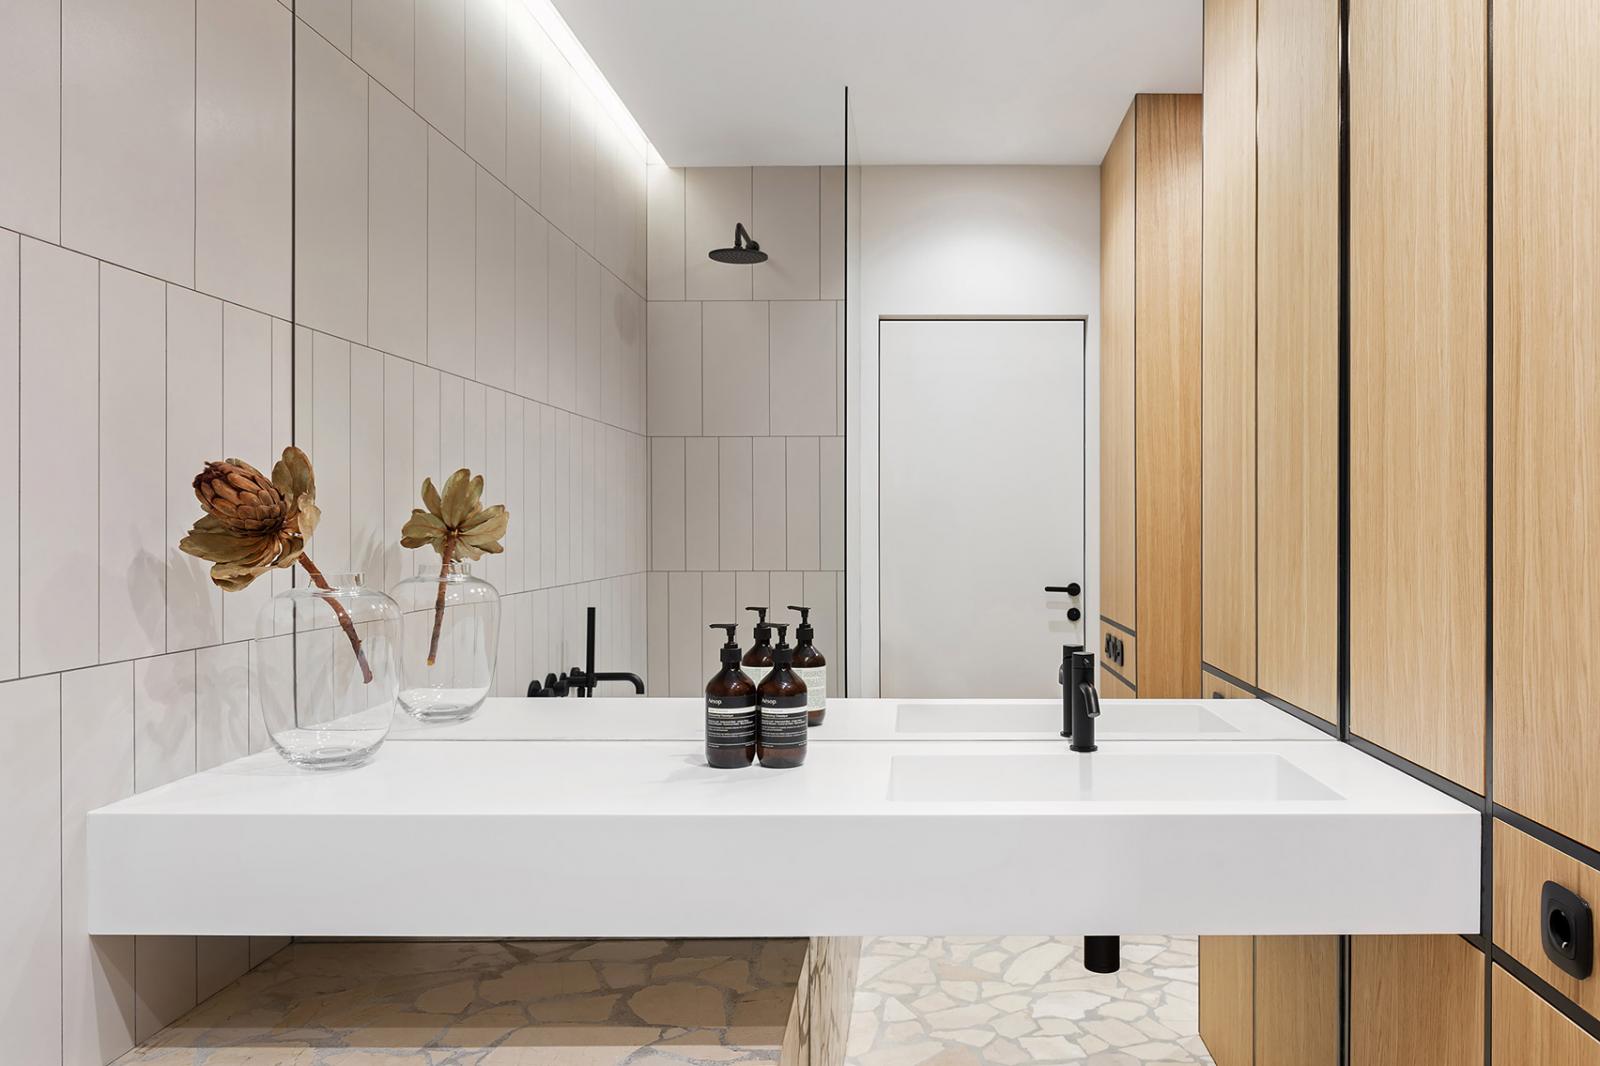 Hình ảnh cận cảnh một góc phòng tắm hiện đại với gương lớn gắn tường, bồn rửa hình chữ nhật màu trắng